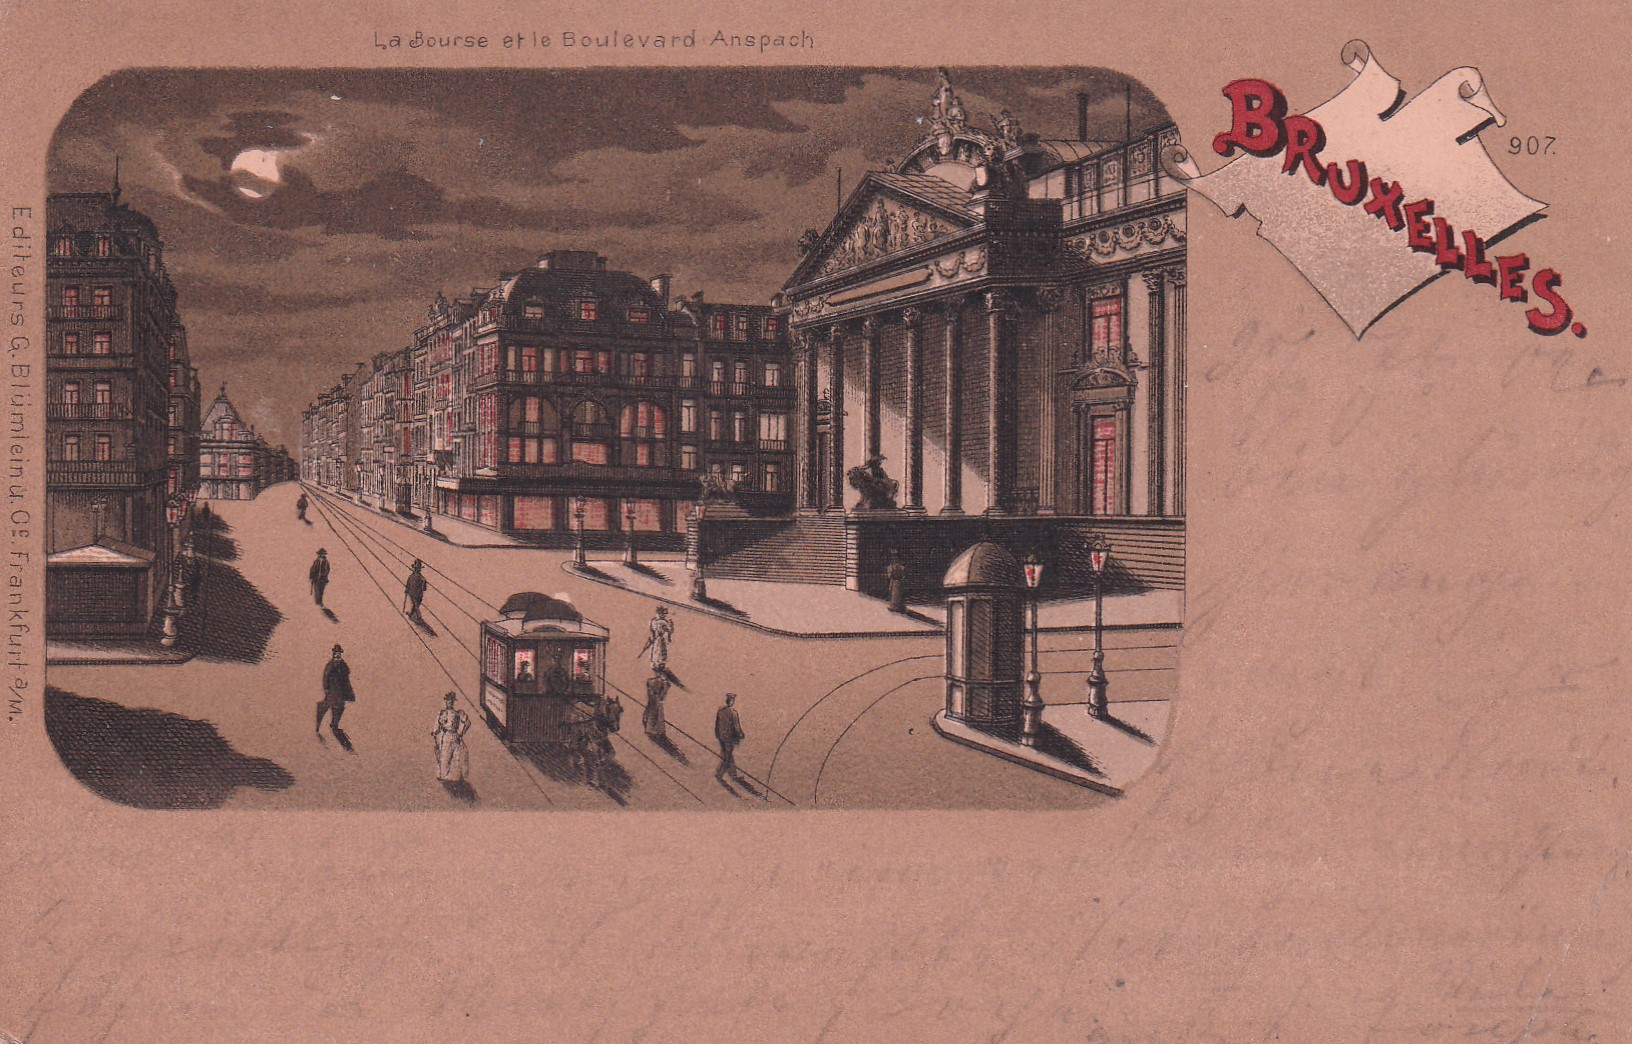 - La Bourse et le Boulevard Anspach - BRUXELLES - 29.09.1902 -